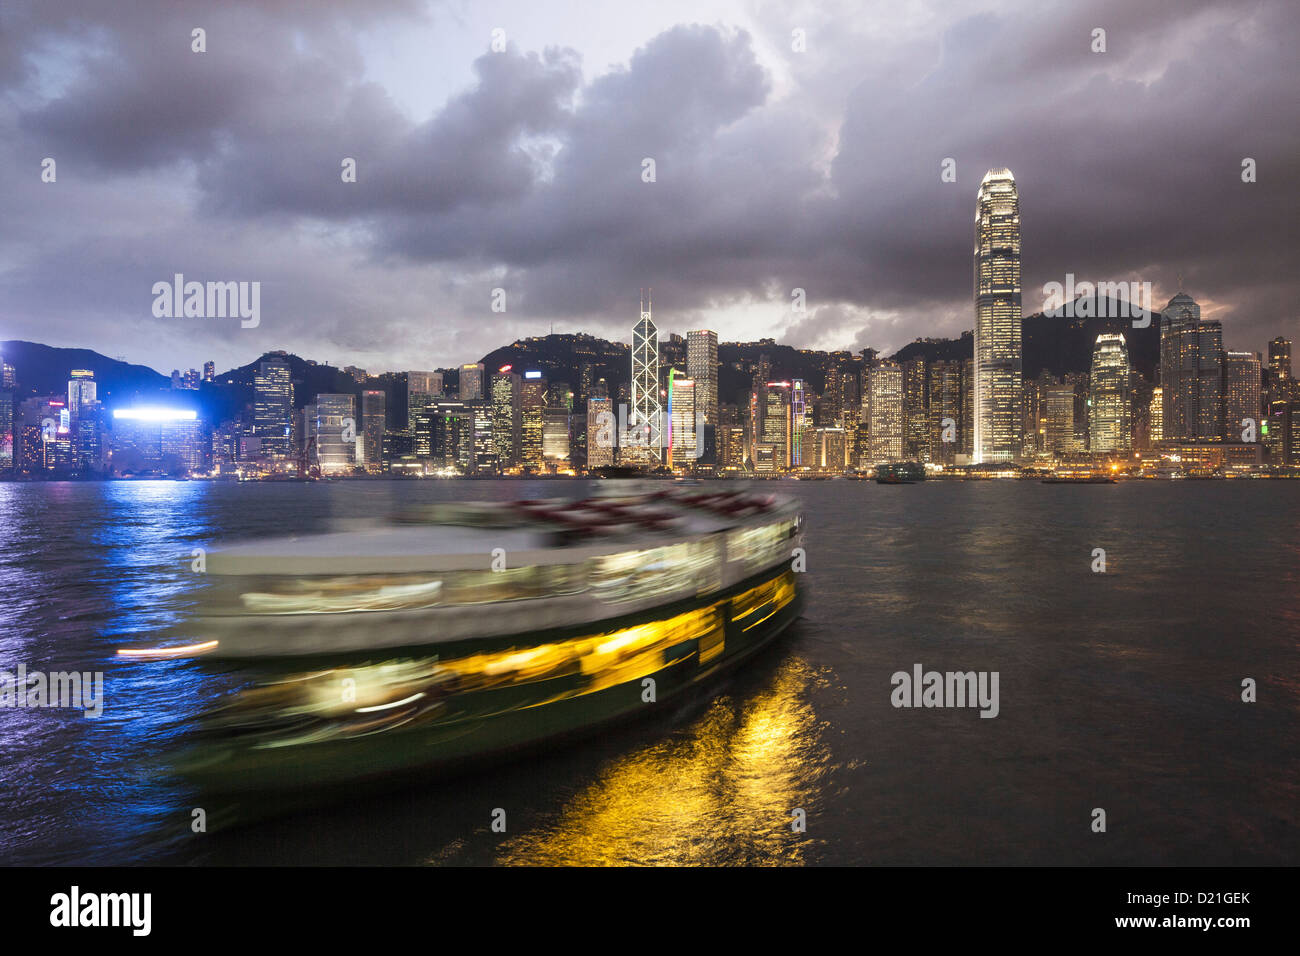 Skyline de l'île de Hong Kong et Star Ferry de nuit, l'île de Hong Kong, Hong Kong, Chine, Asie Banque D'Images